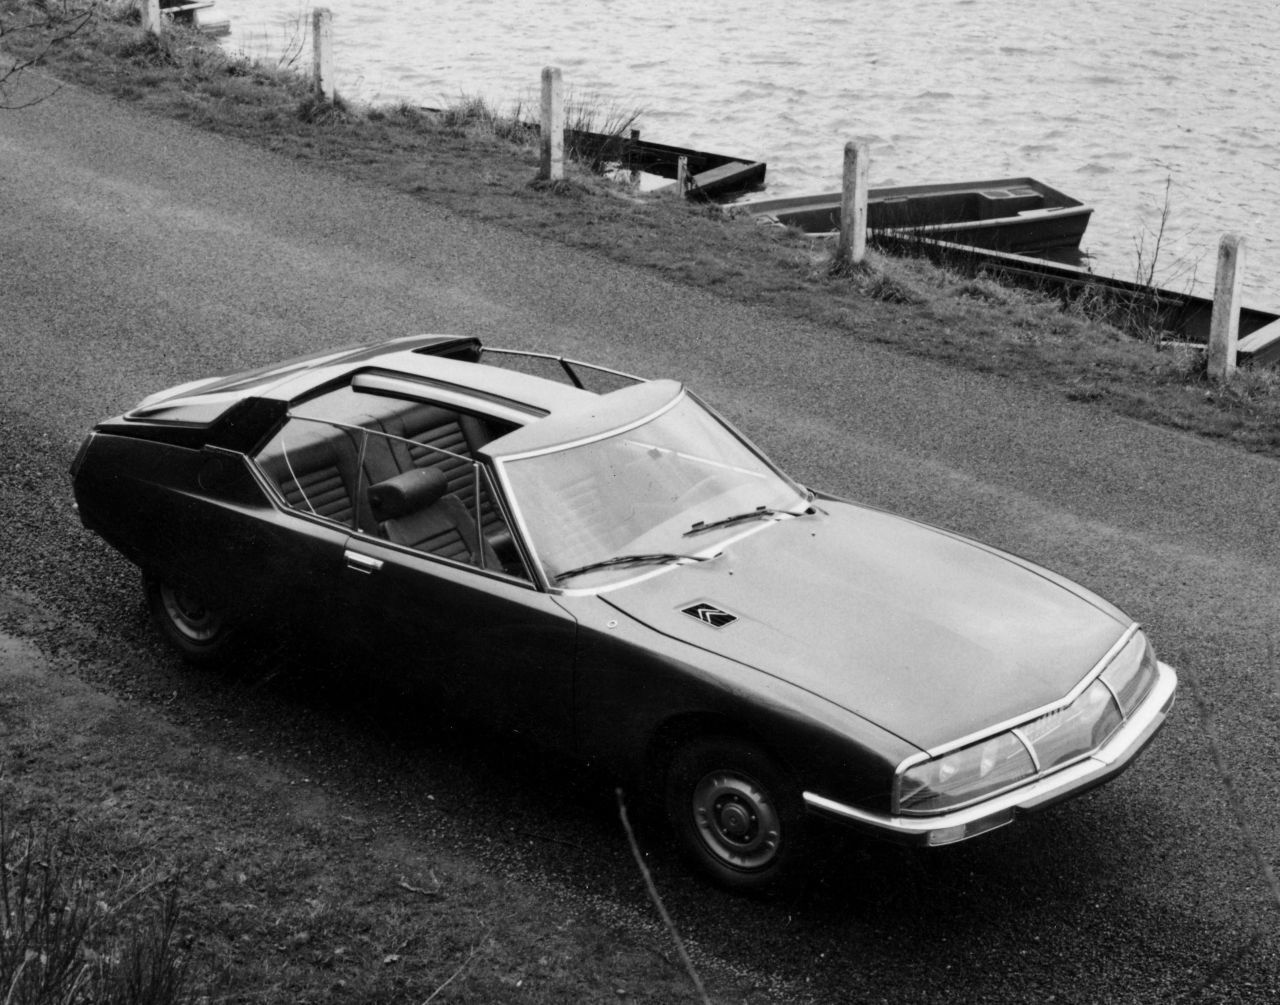 Wie die präsidialen Sondermodelle kam auch die normale Cabrio-Version SM Mylord (Bild) vom Pariser Karosseriebauer Henri Chapron.